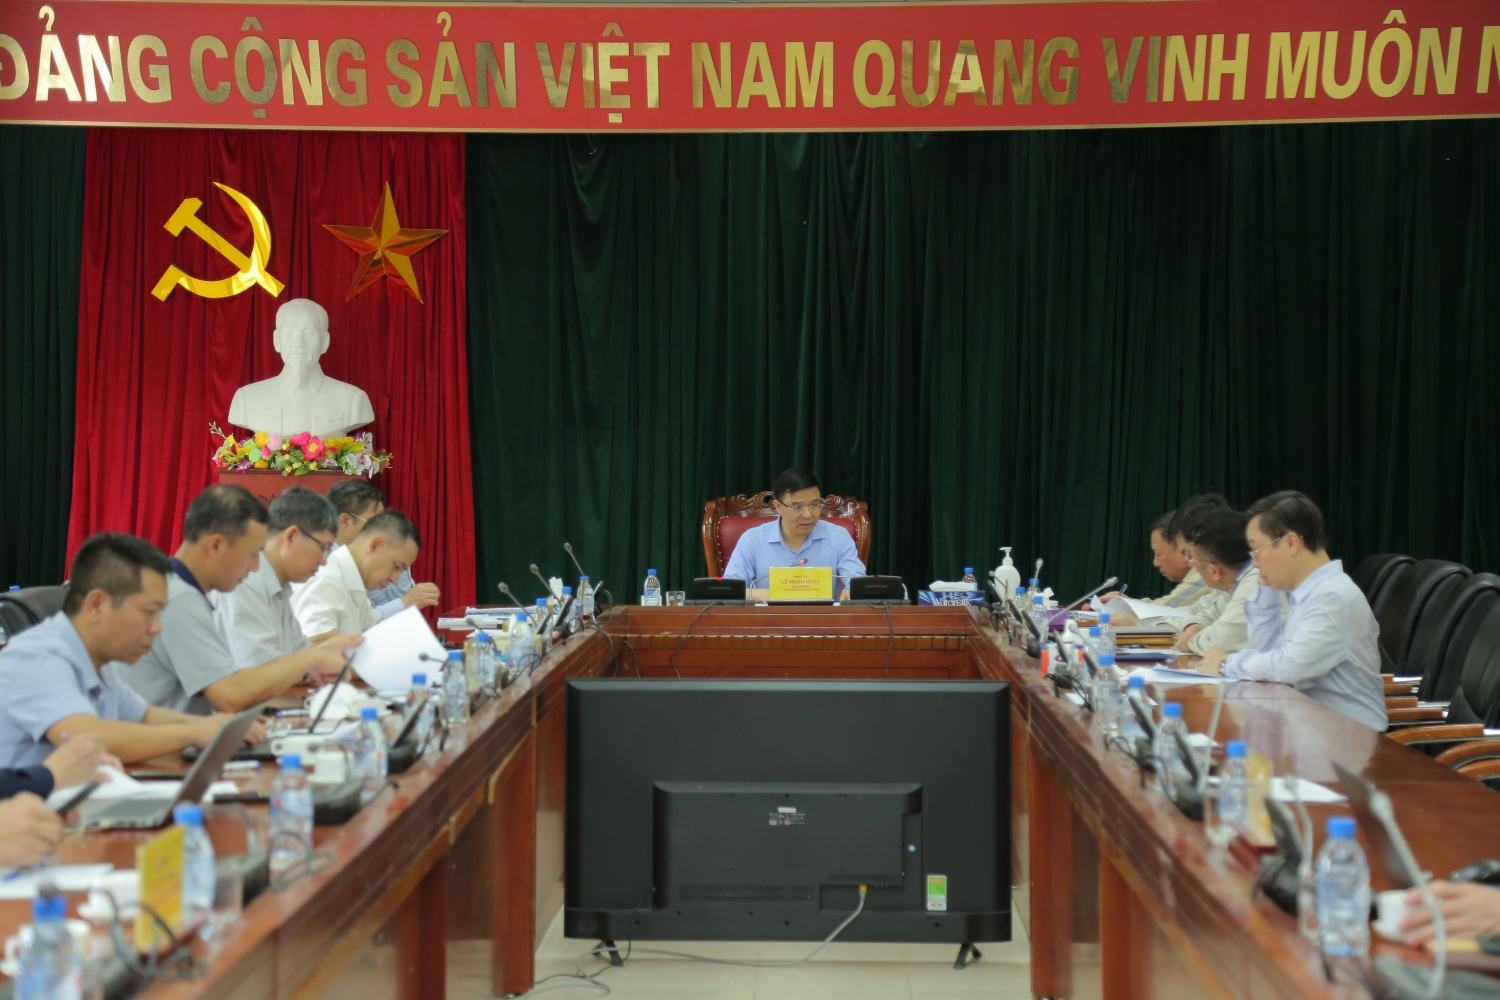 Tổng Giám đốc Petrovietnam Lê Mạnh Hùng: Sẵn sàng hòa điện đồng bộ Tổ máy số 1 NMNĐ Thái Bình 2